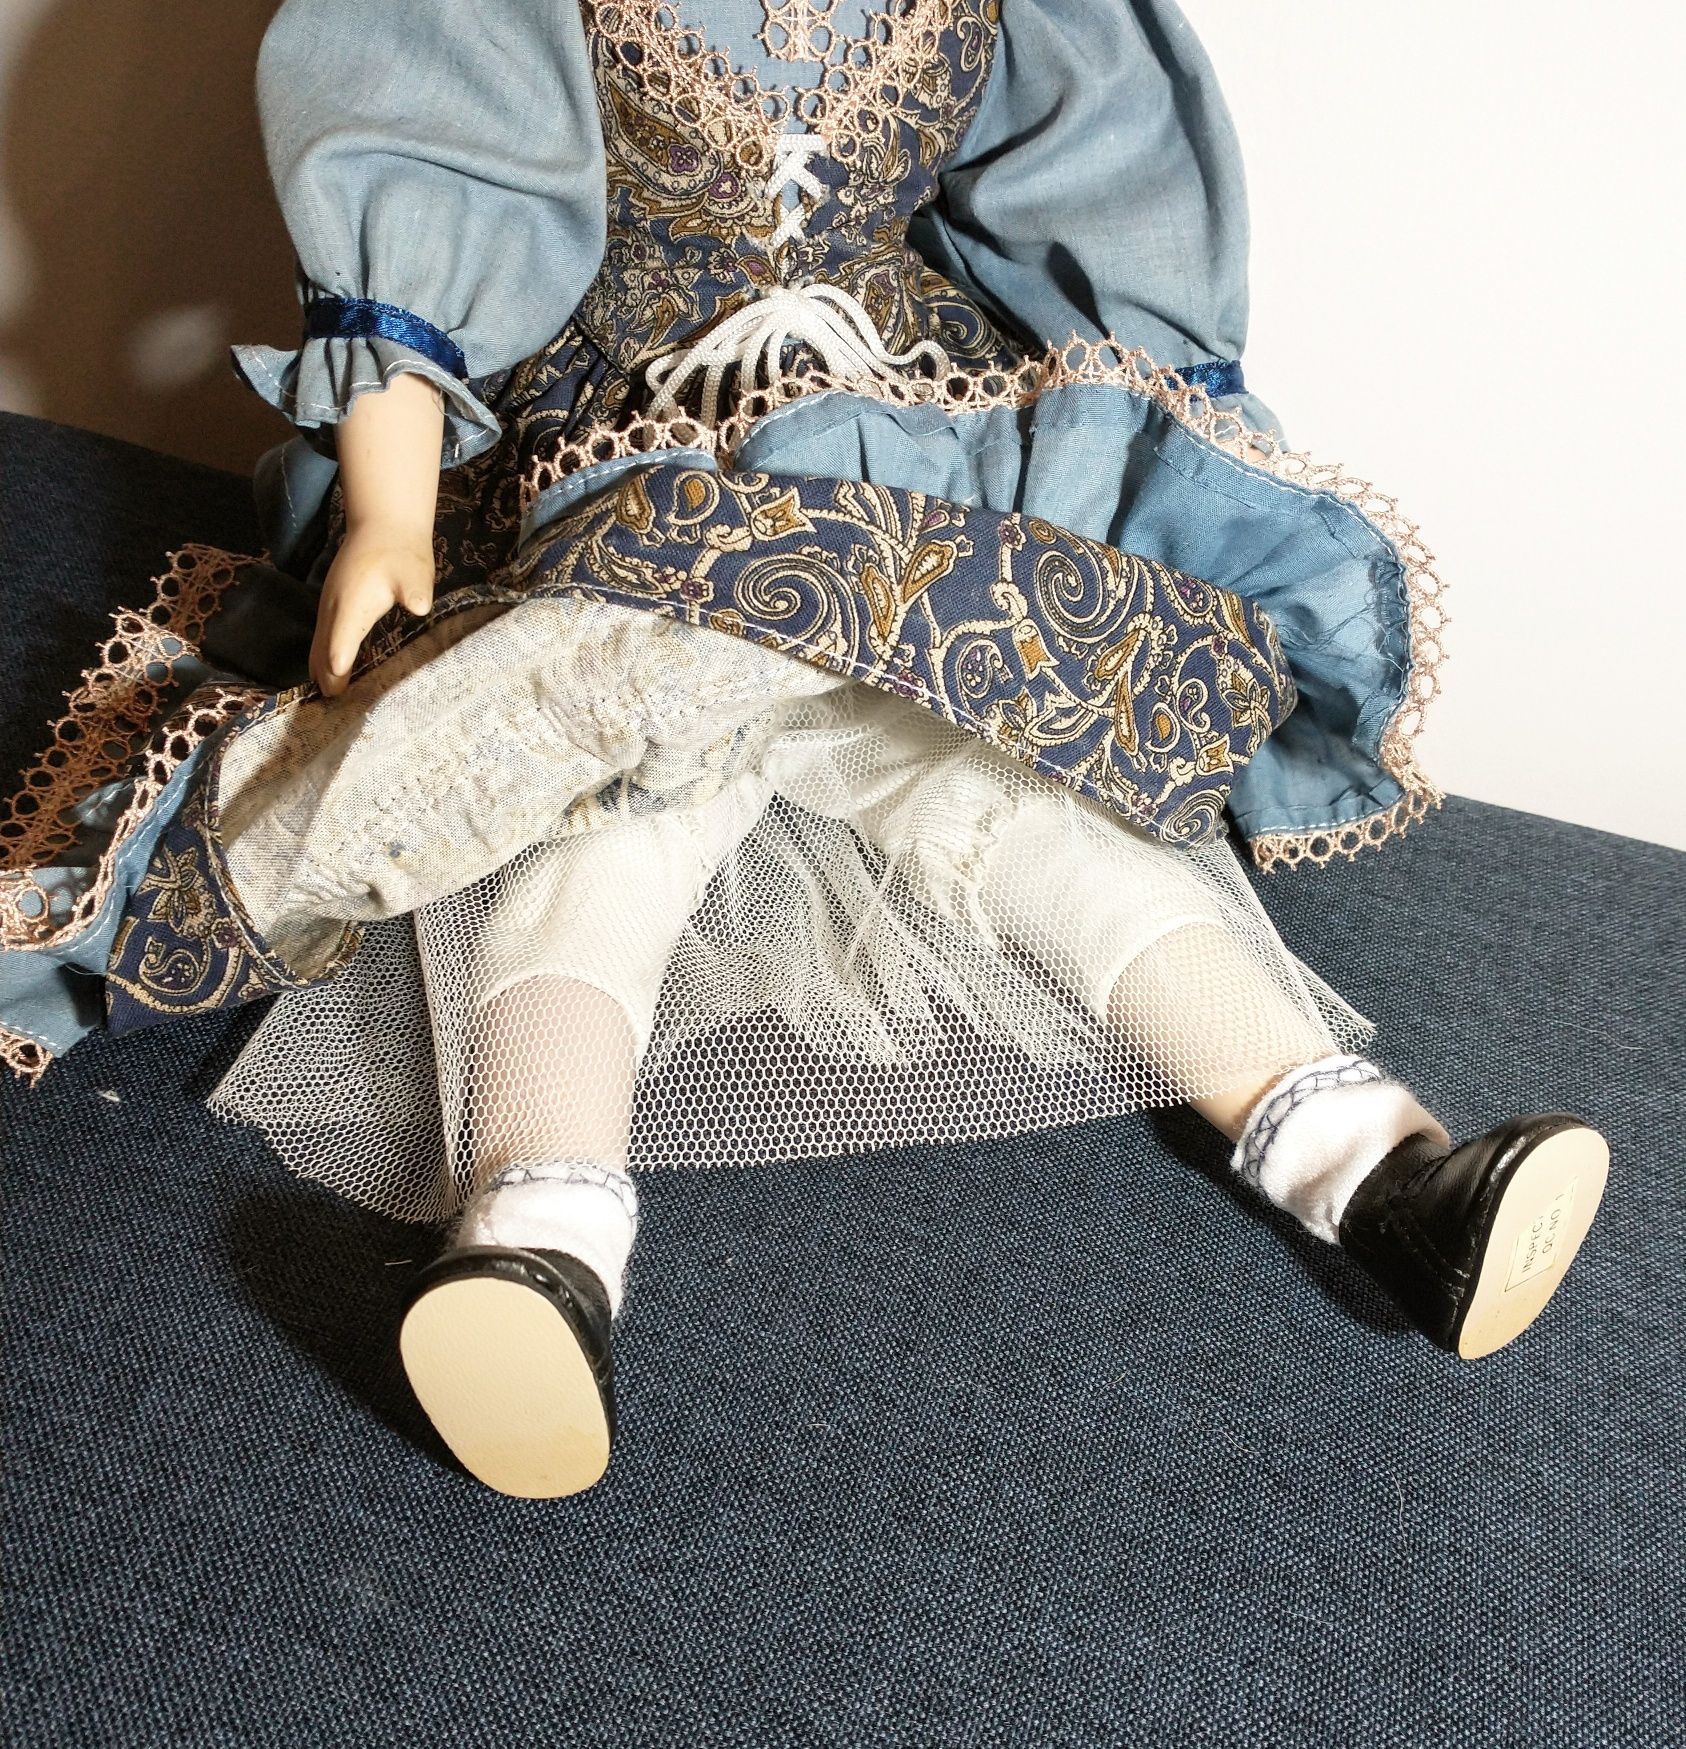 OKAZJA Piękna unikatowa lalka porcelanowa